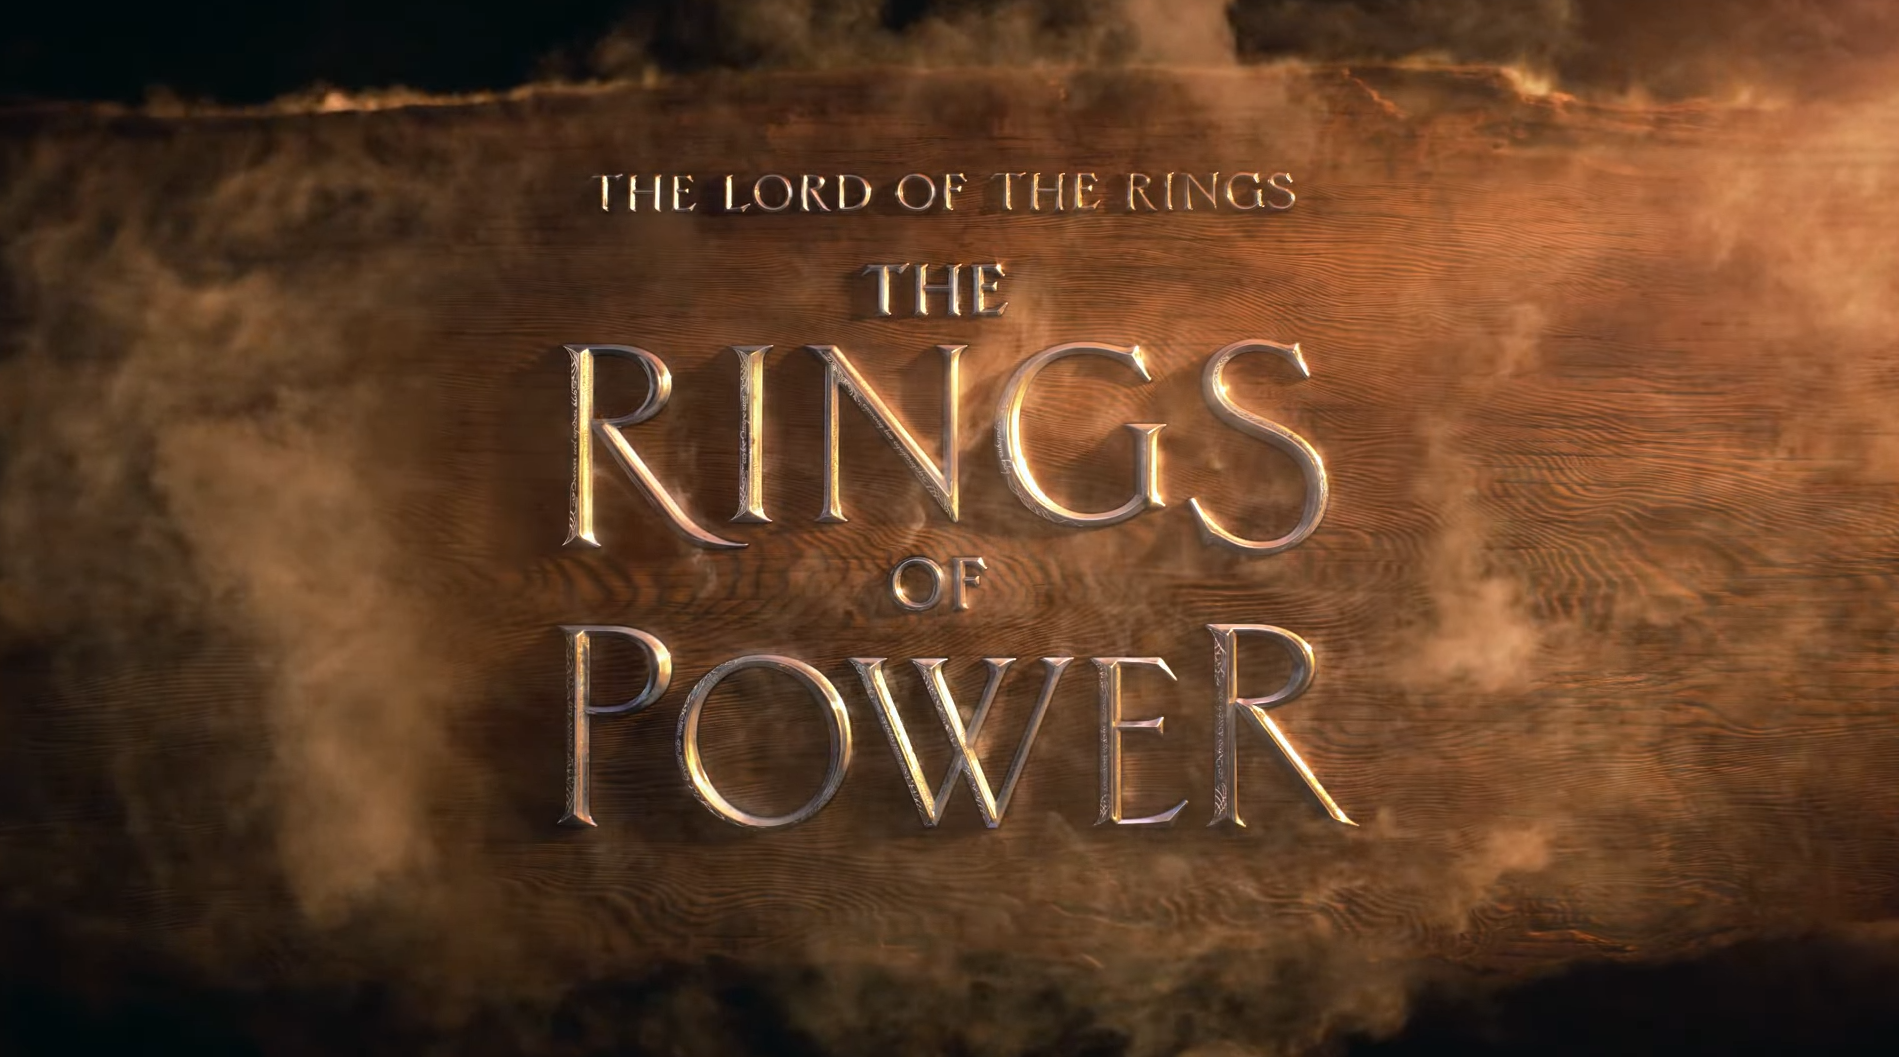 Apareció el primer teaser de la serie El señor de los anillos [Video]